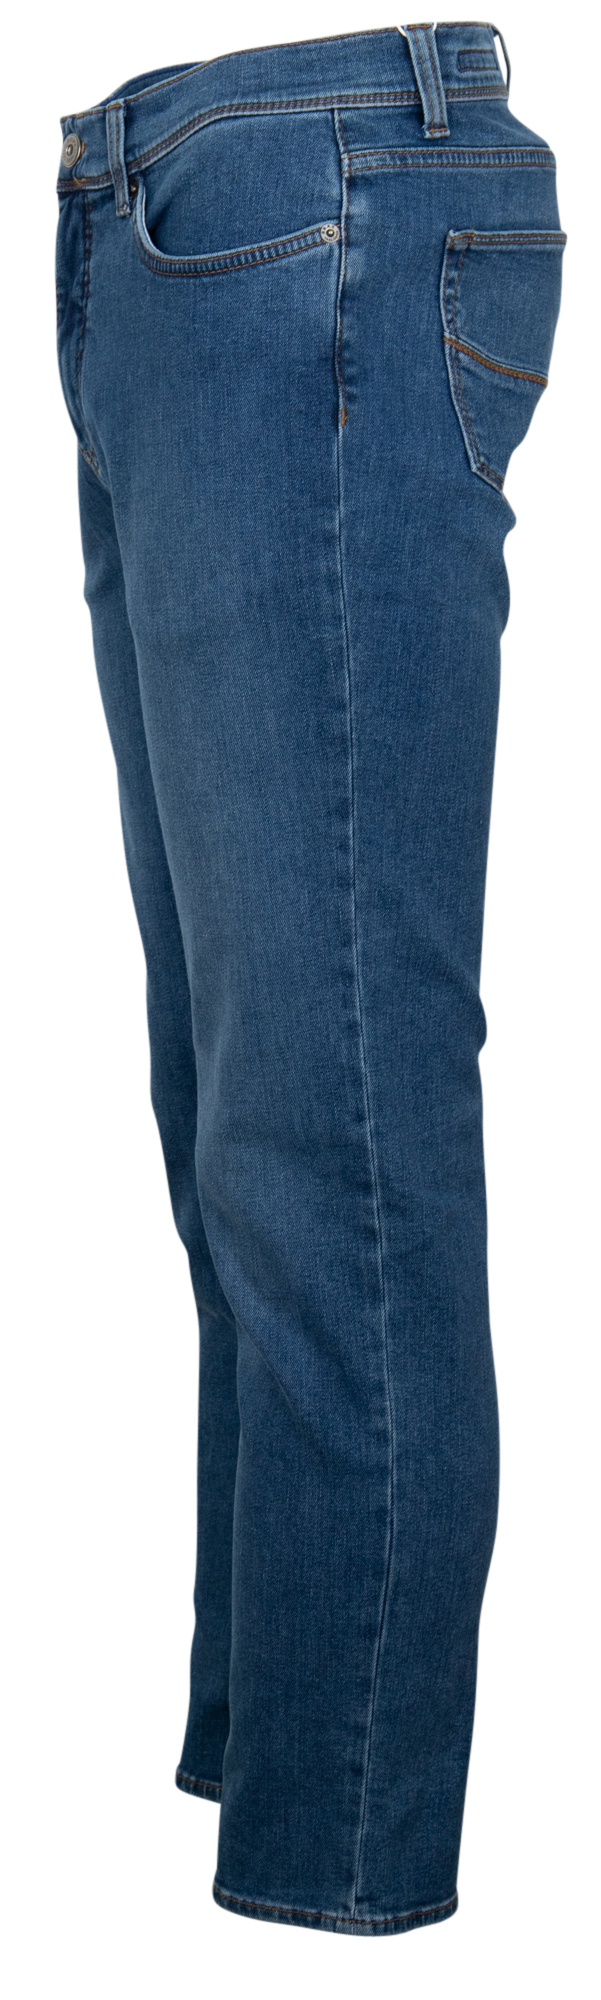 jeans-cadiz-mid-blue-used